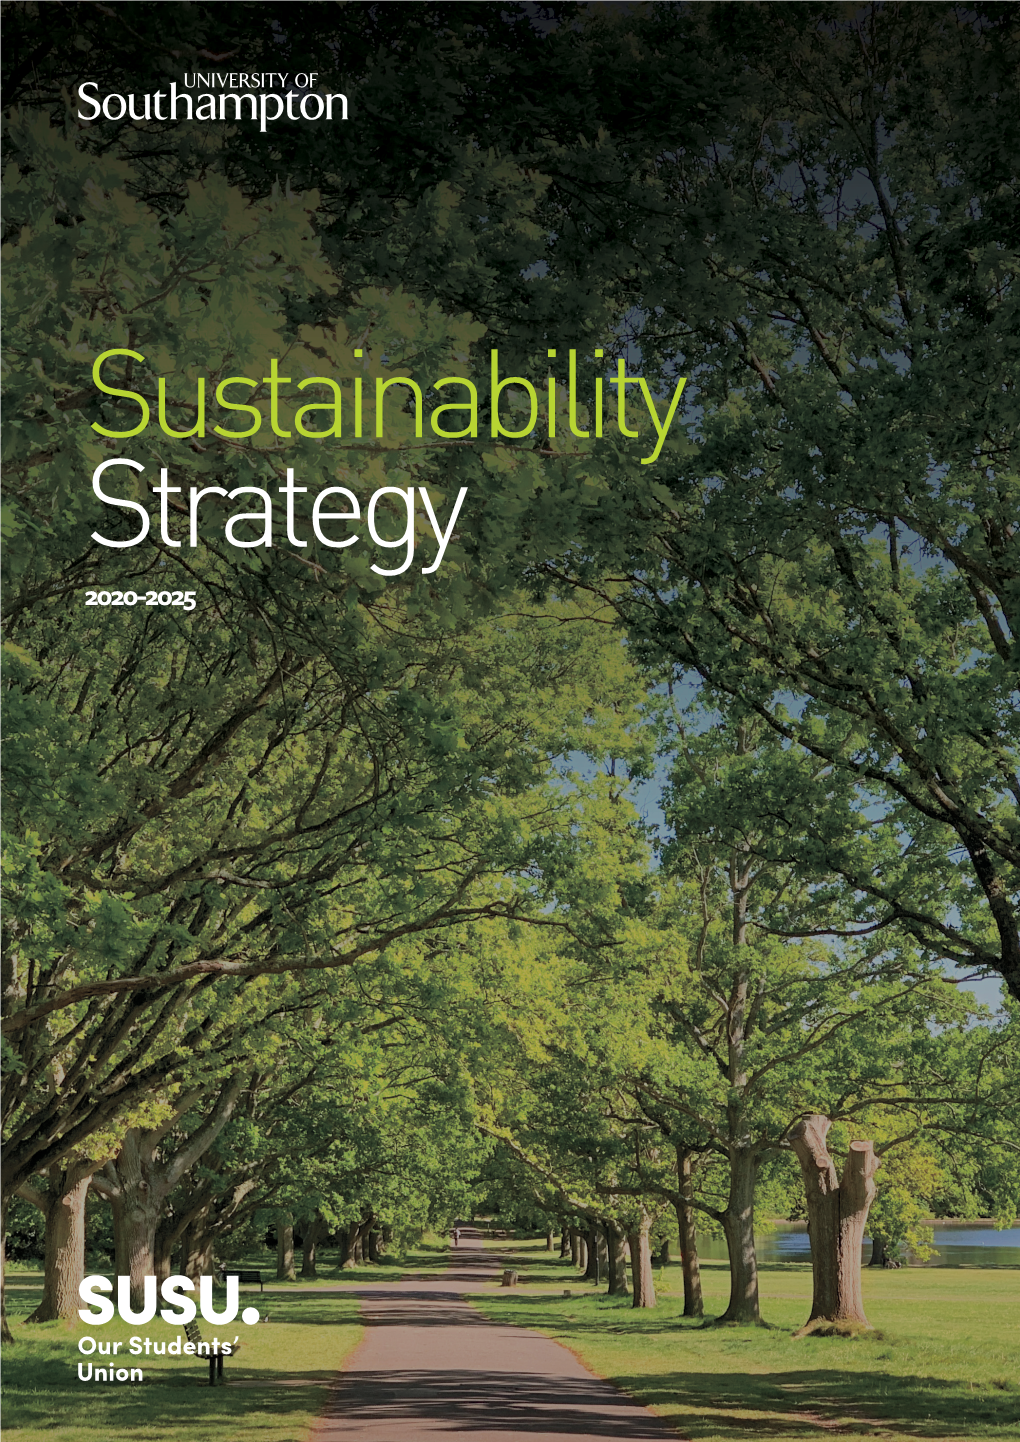 Sustainability Strategy 2020-2025 Summary